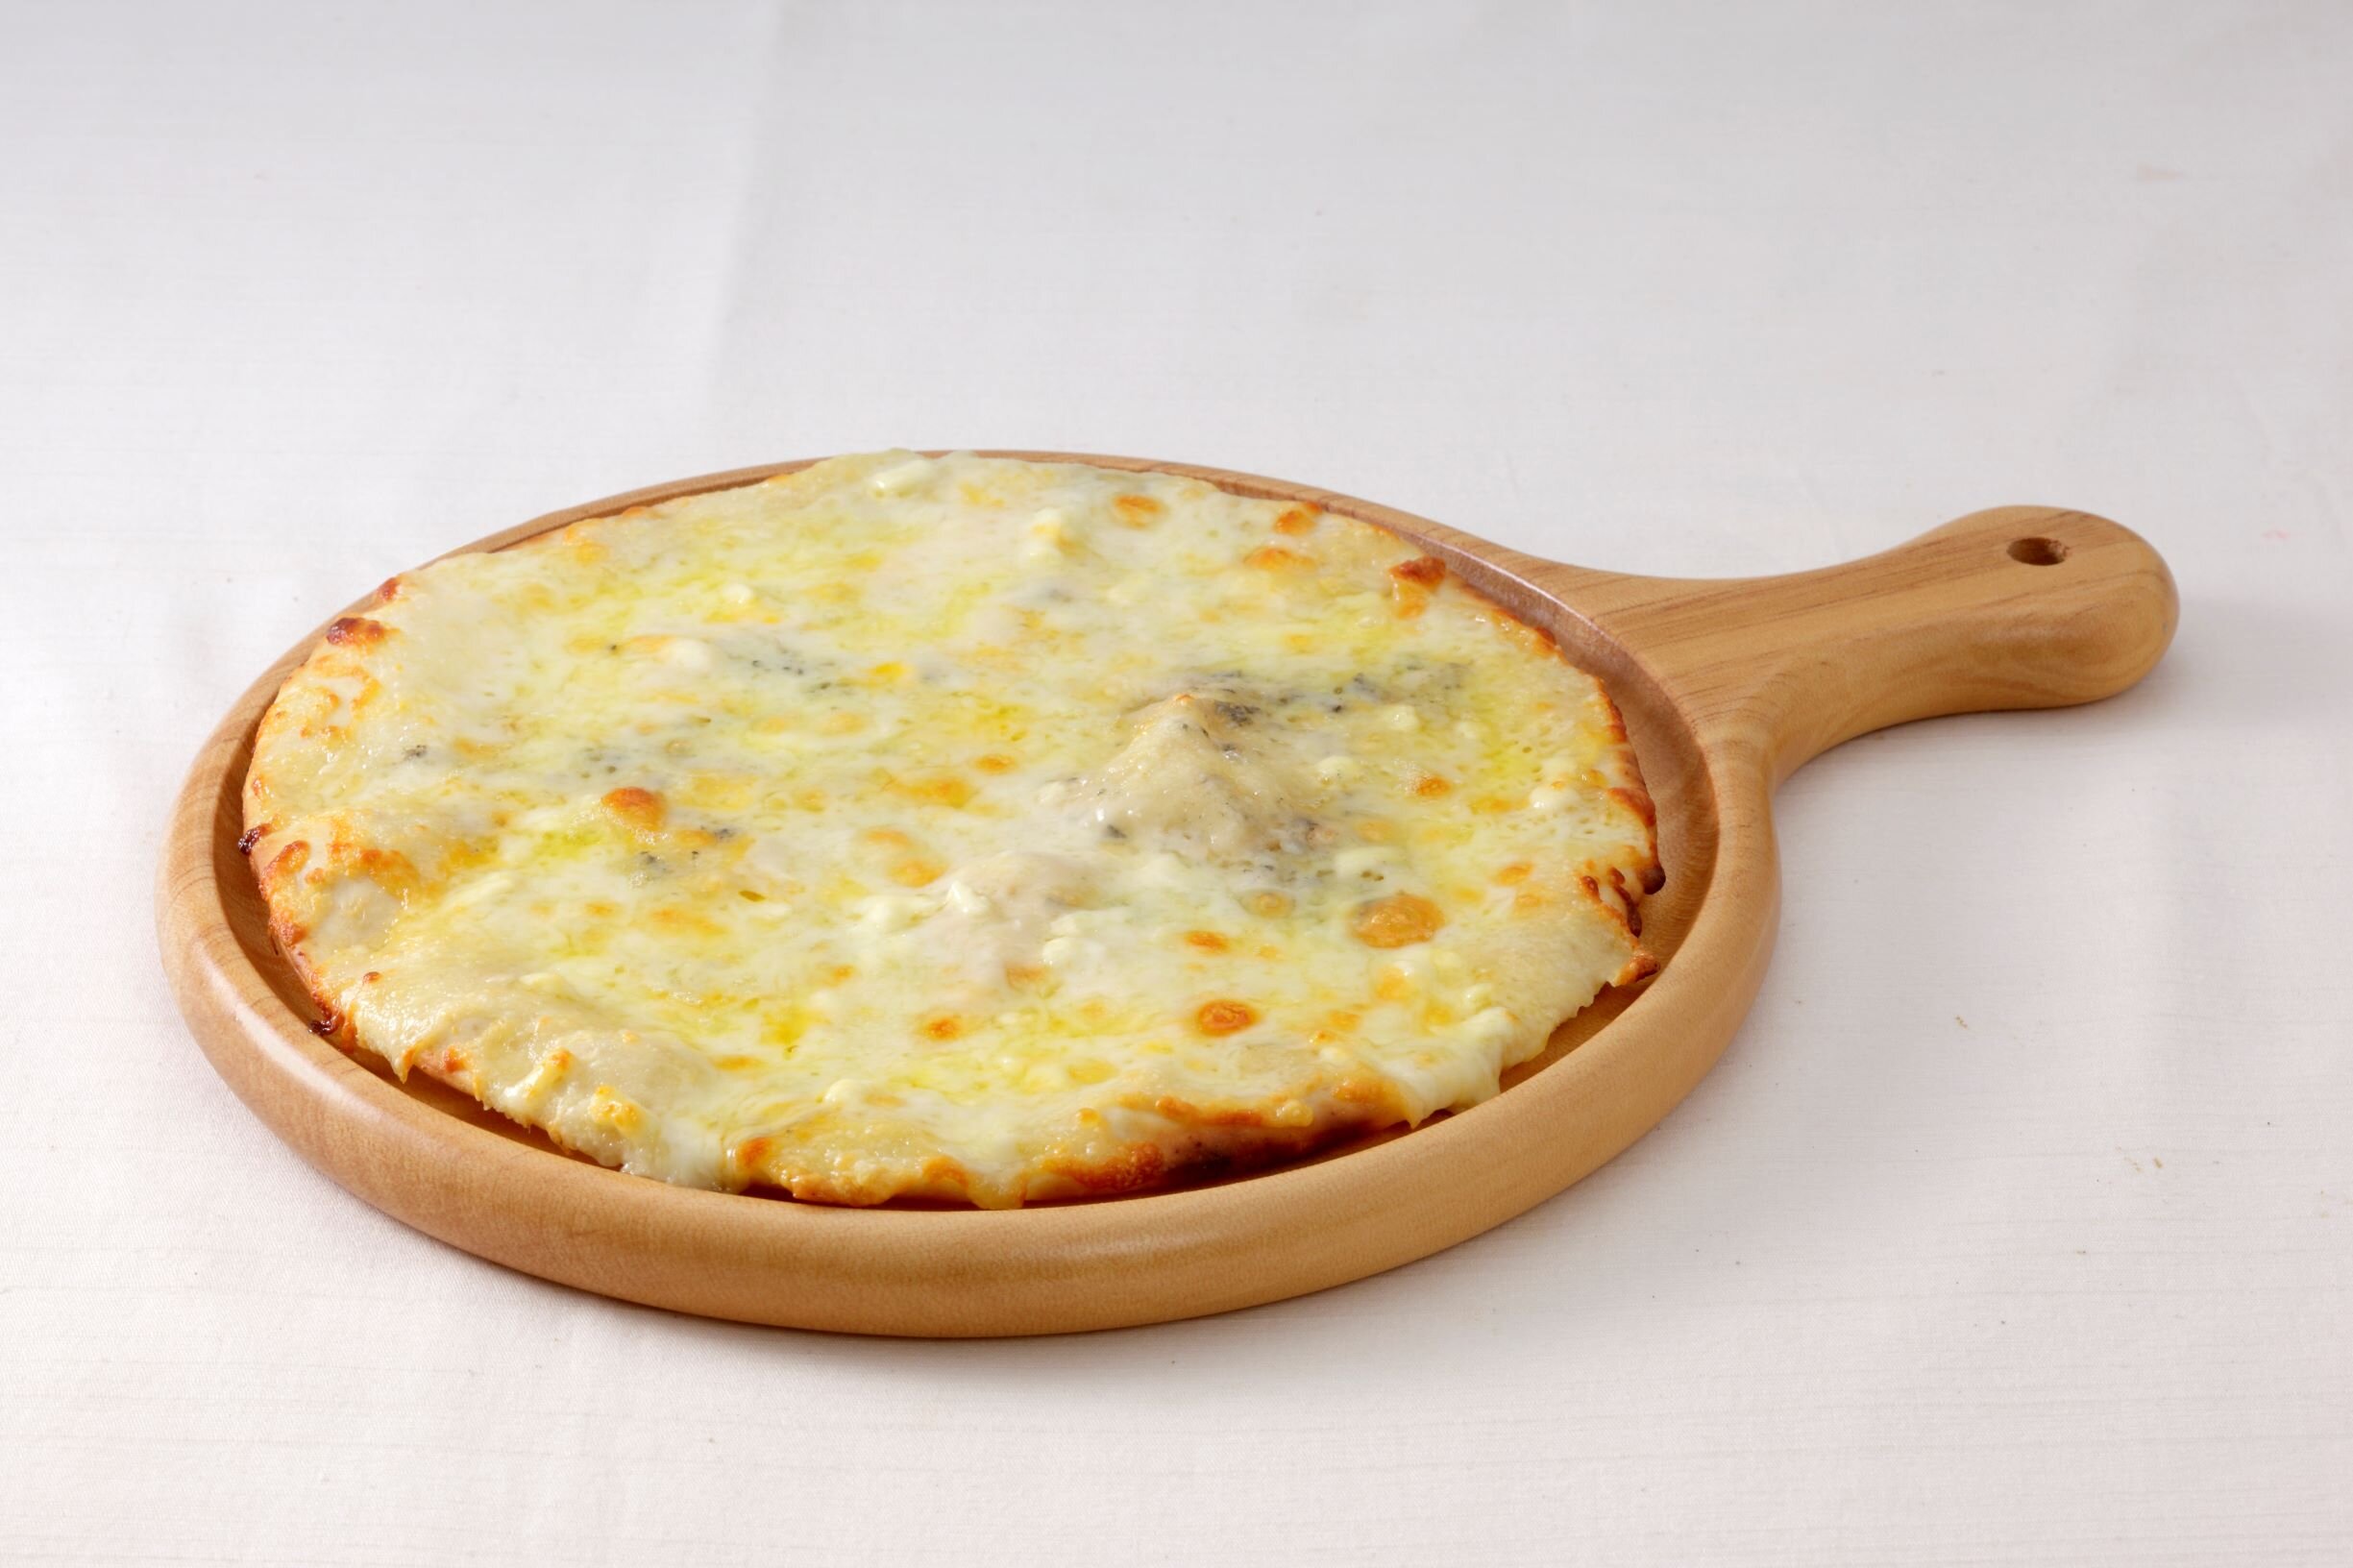 ６種チーズのおつまみピザ